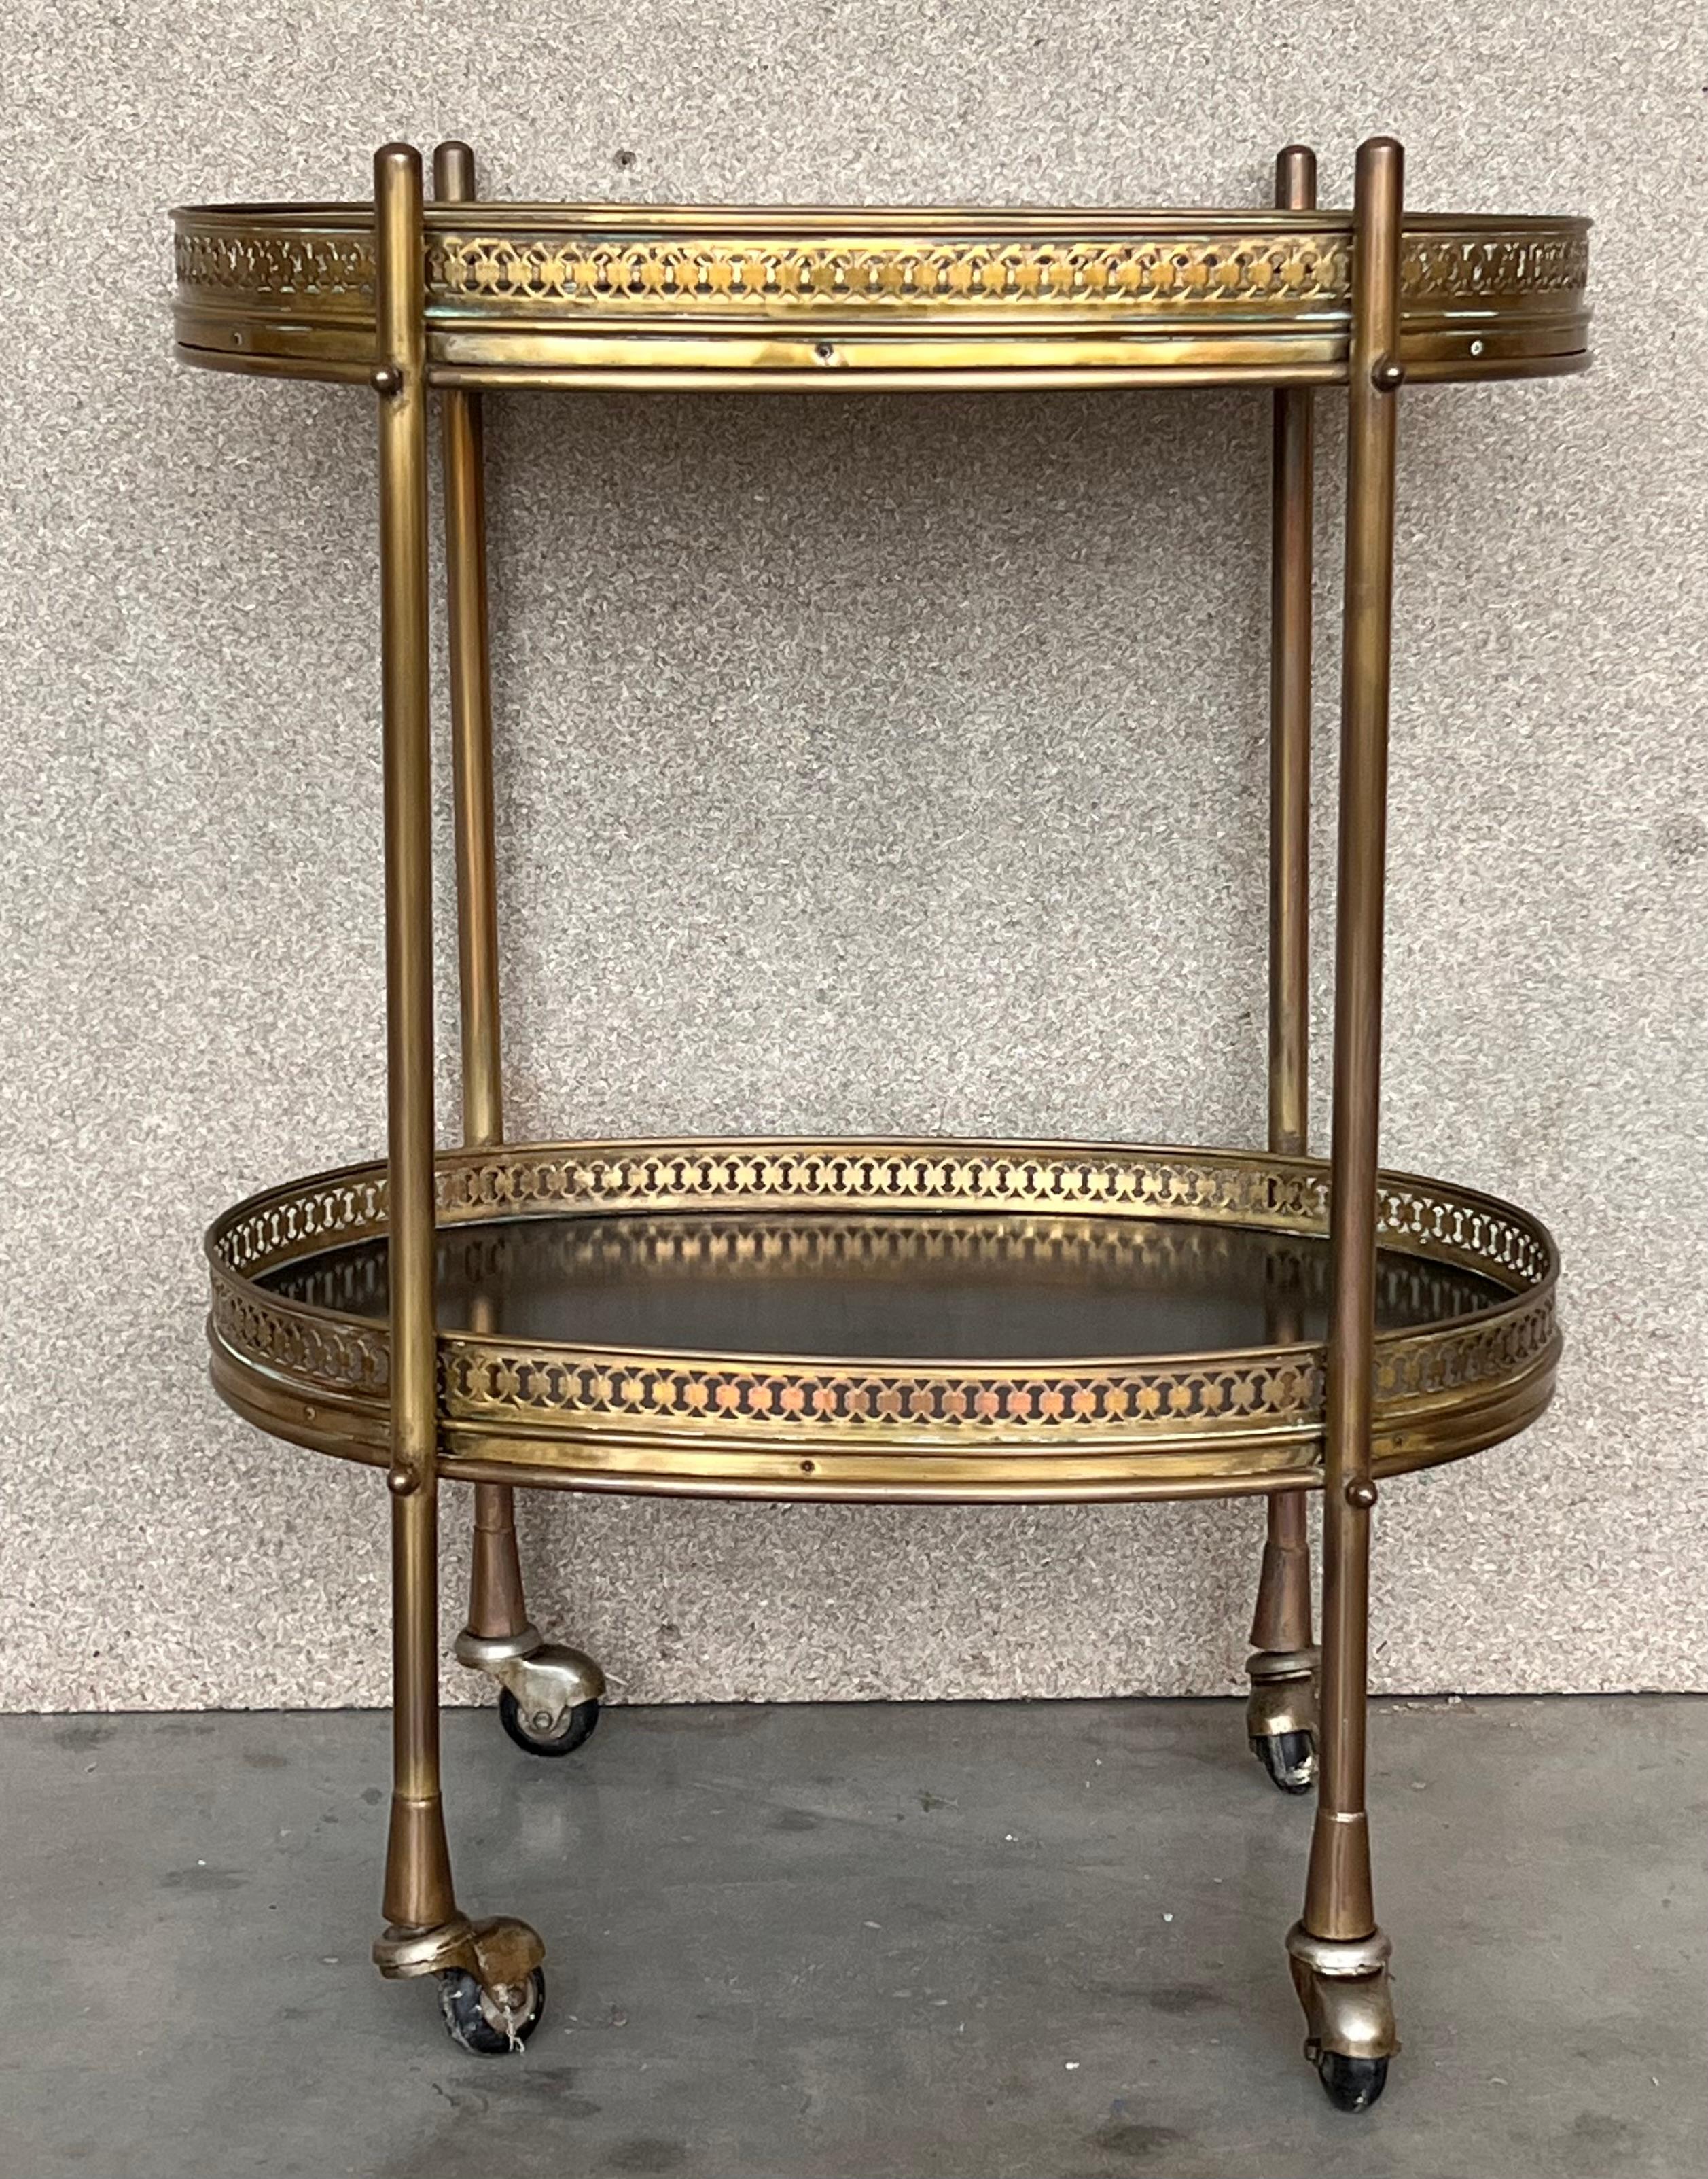 Belle table néo-baroque avec plateau amovible, France, début du 19e siècle, vers 1930-1940. Fabriqué en placage de noyer, ce meuble est doté de pieds élégants et de deux plateaux amovibles en laiton. Une finition à la gomme-laque polie à la main